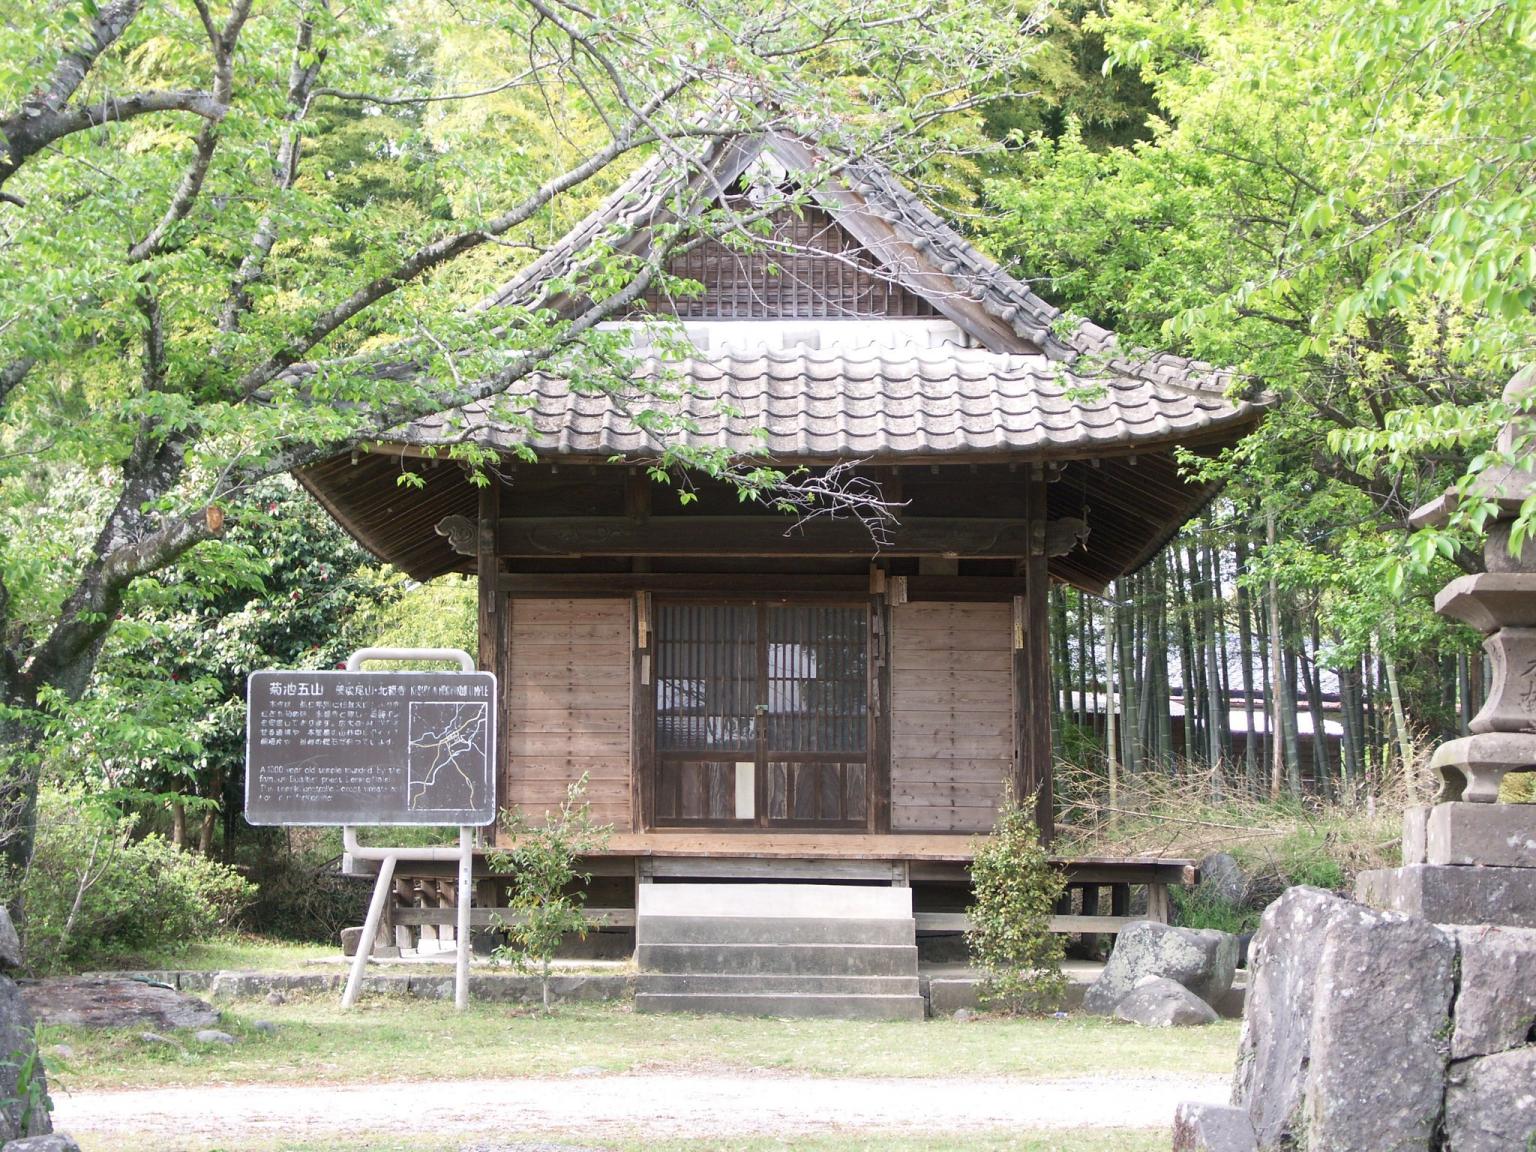 北福寺 観光地 公式 熊本県観光サイト もっと もーっと くまもっと